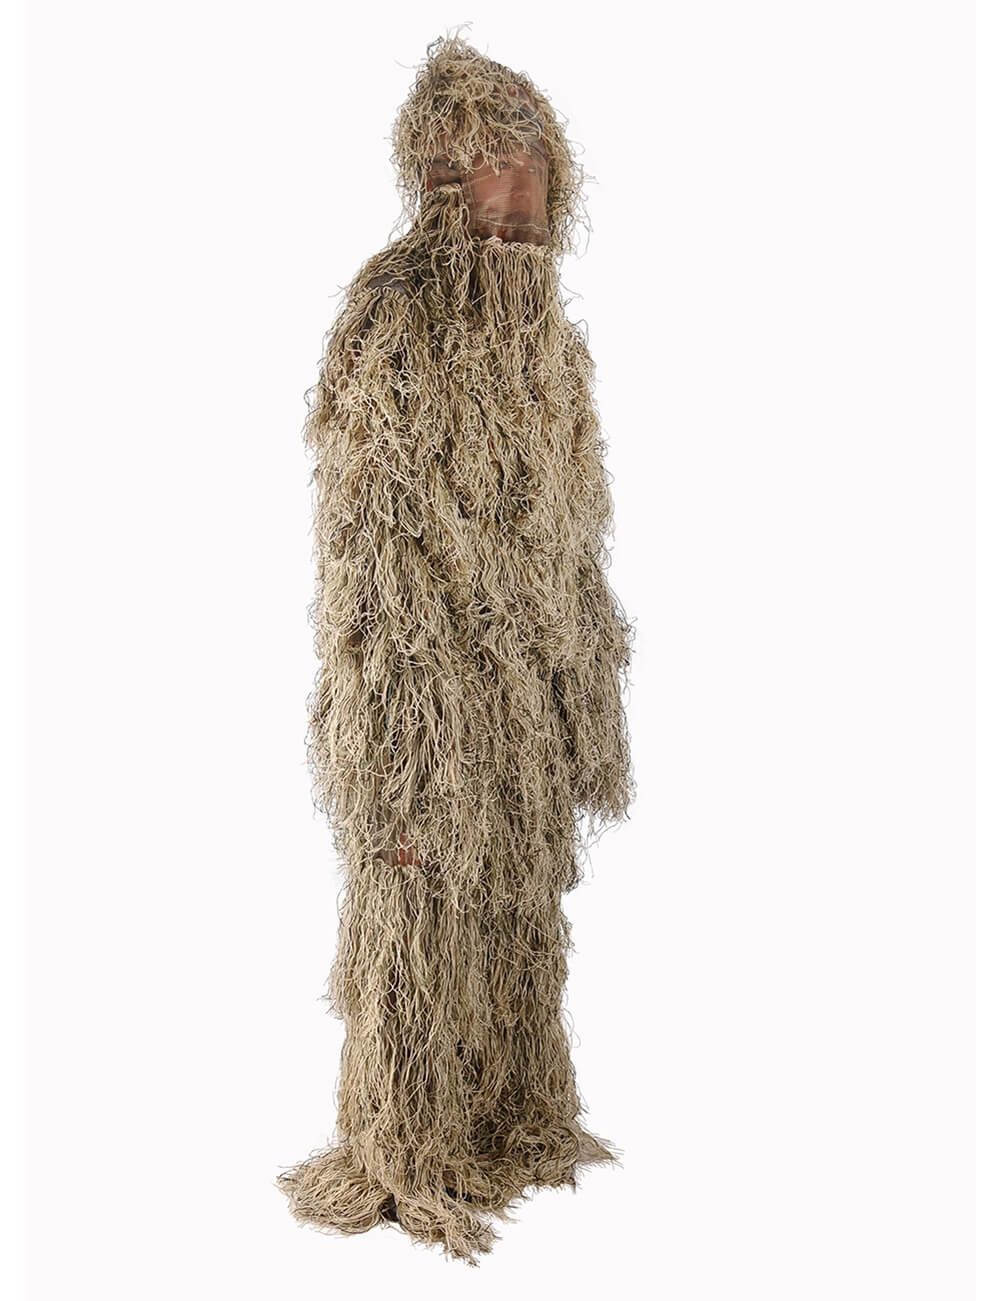 костюм Ghost Ghillie для мужчин | Плотный дизайн с двойным швом | Превосходная камуфляжная охотничья одежда для охотников